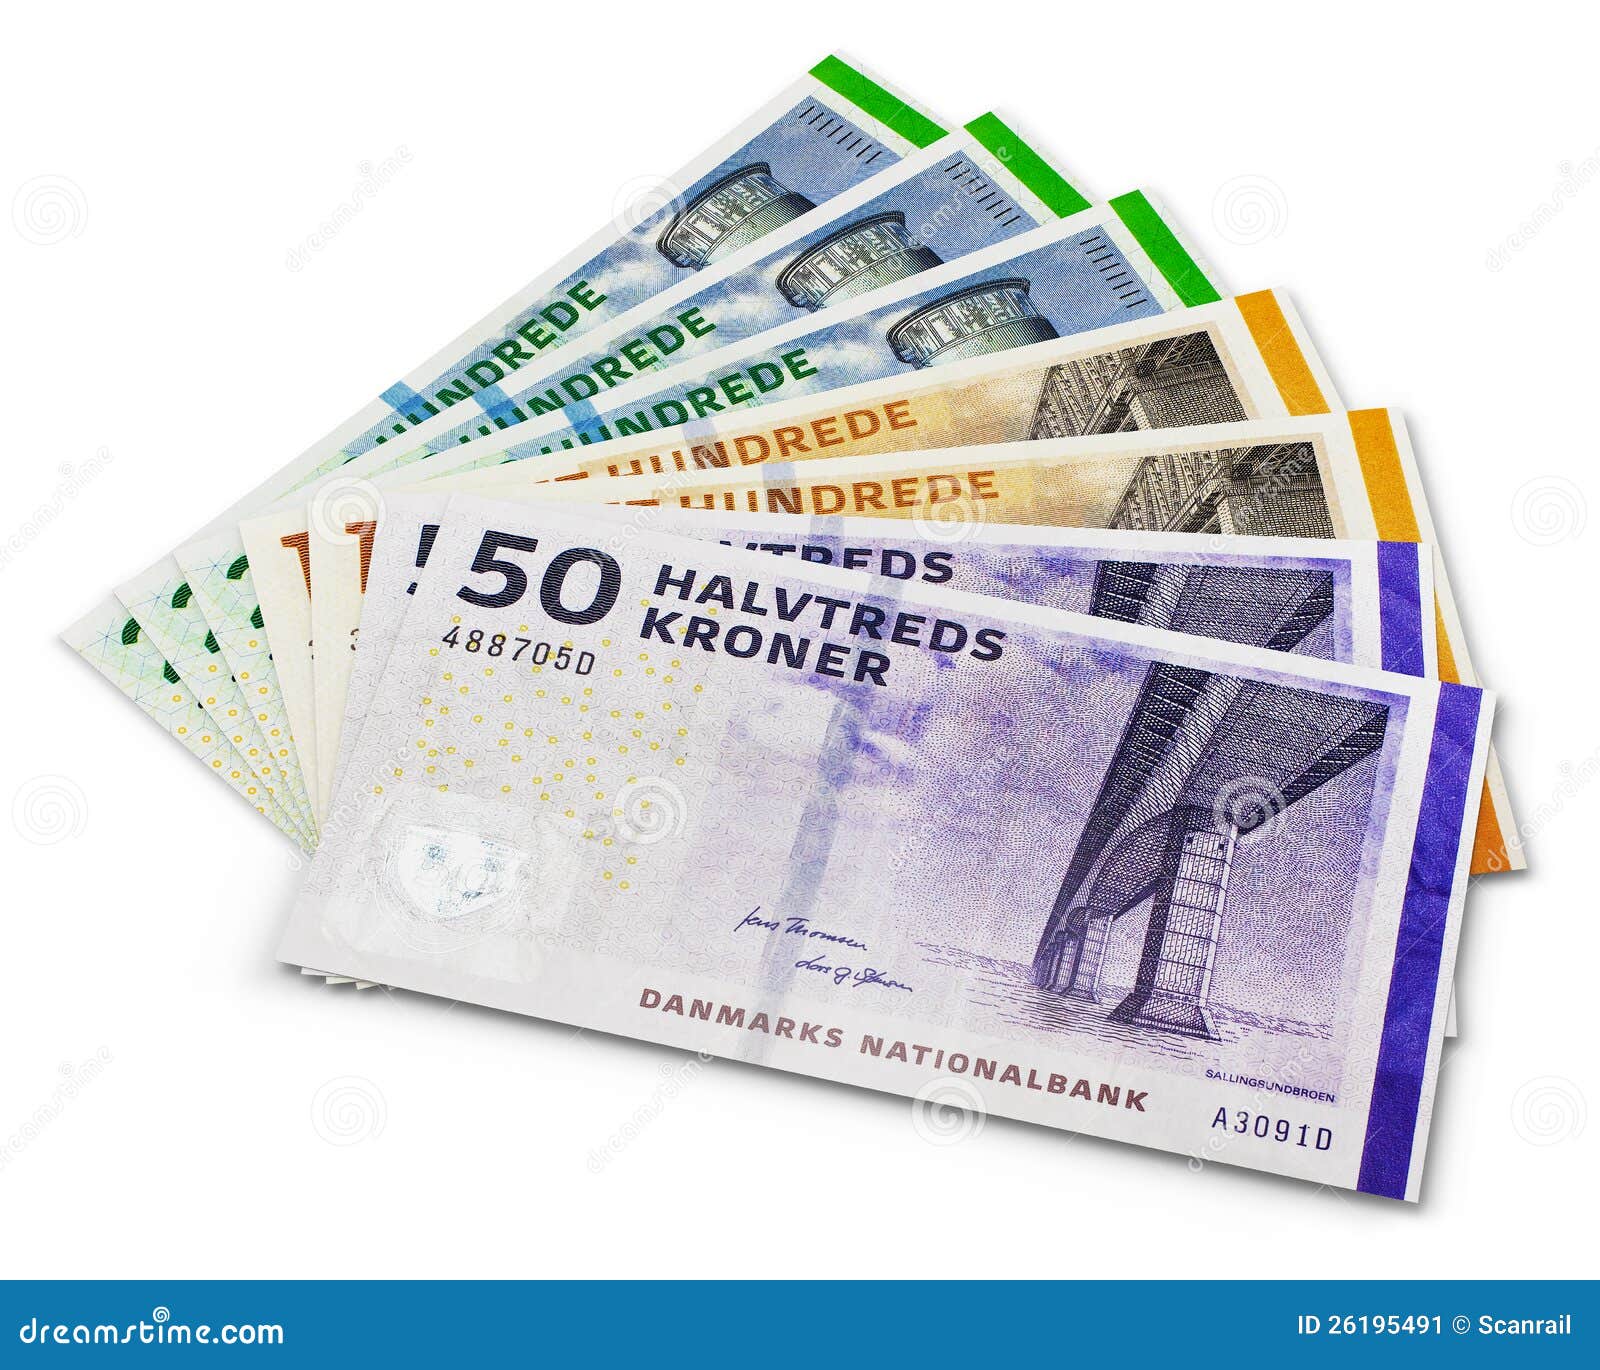 pila-de-200-100-y-50-billetes-de-banco-de-la-corona-danesa-26195491.jpg